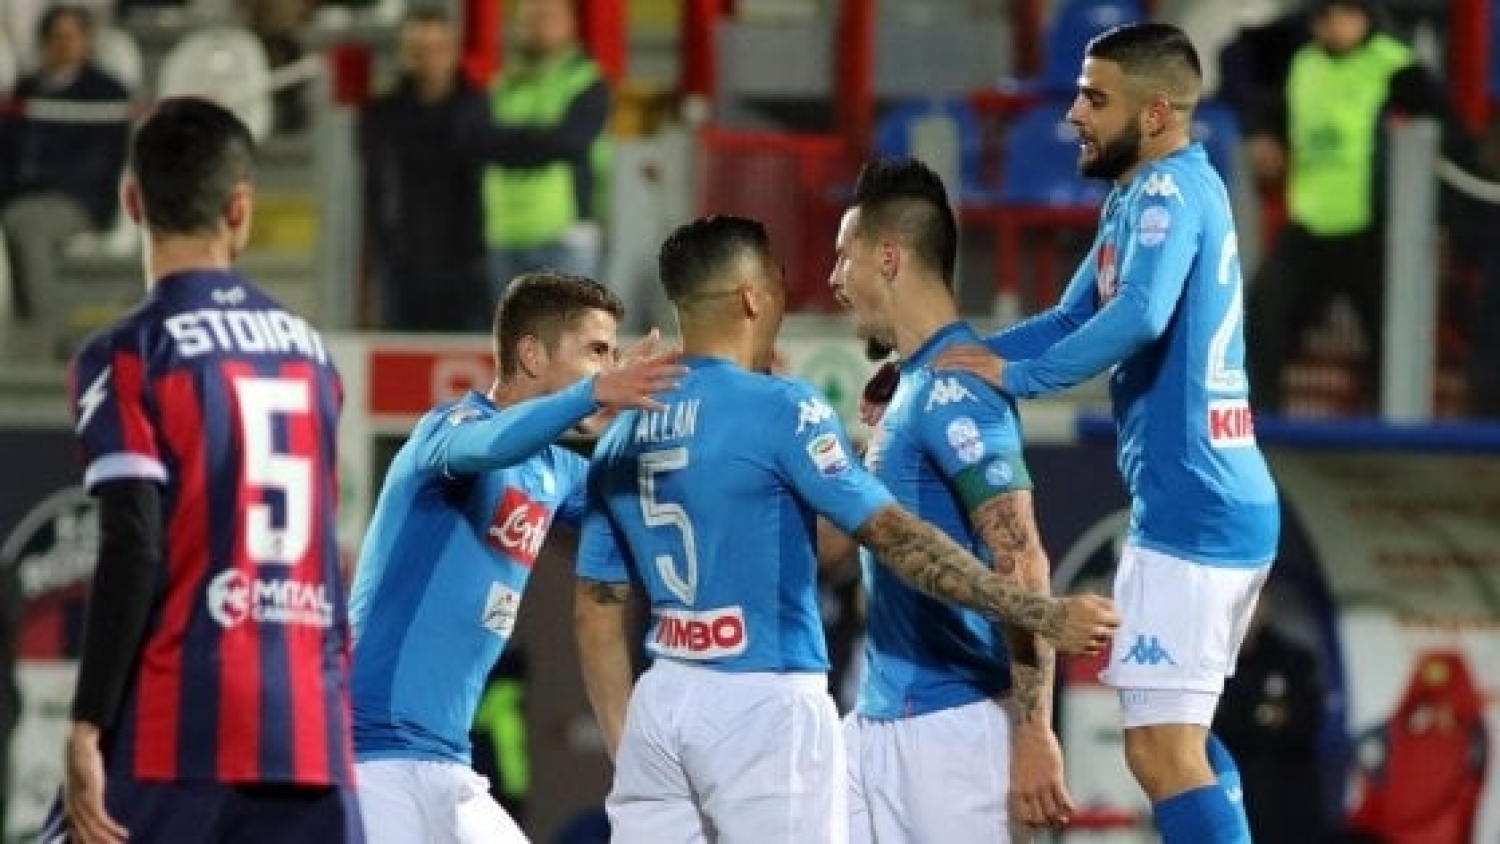 Crotone - Napoli, i precedenti: 3 vittorie azzurre su 4 allo "Scida"